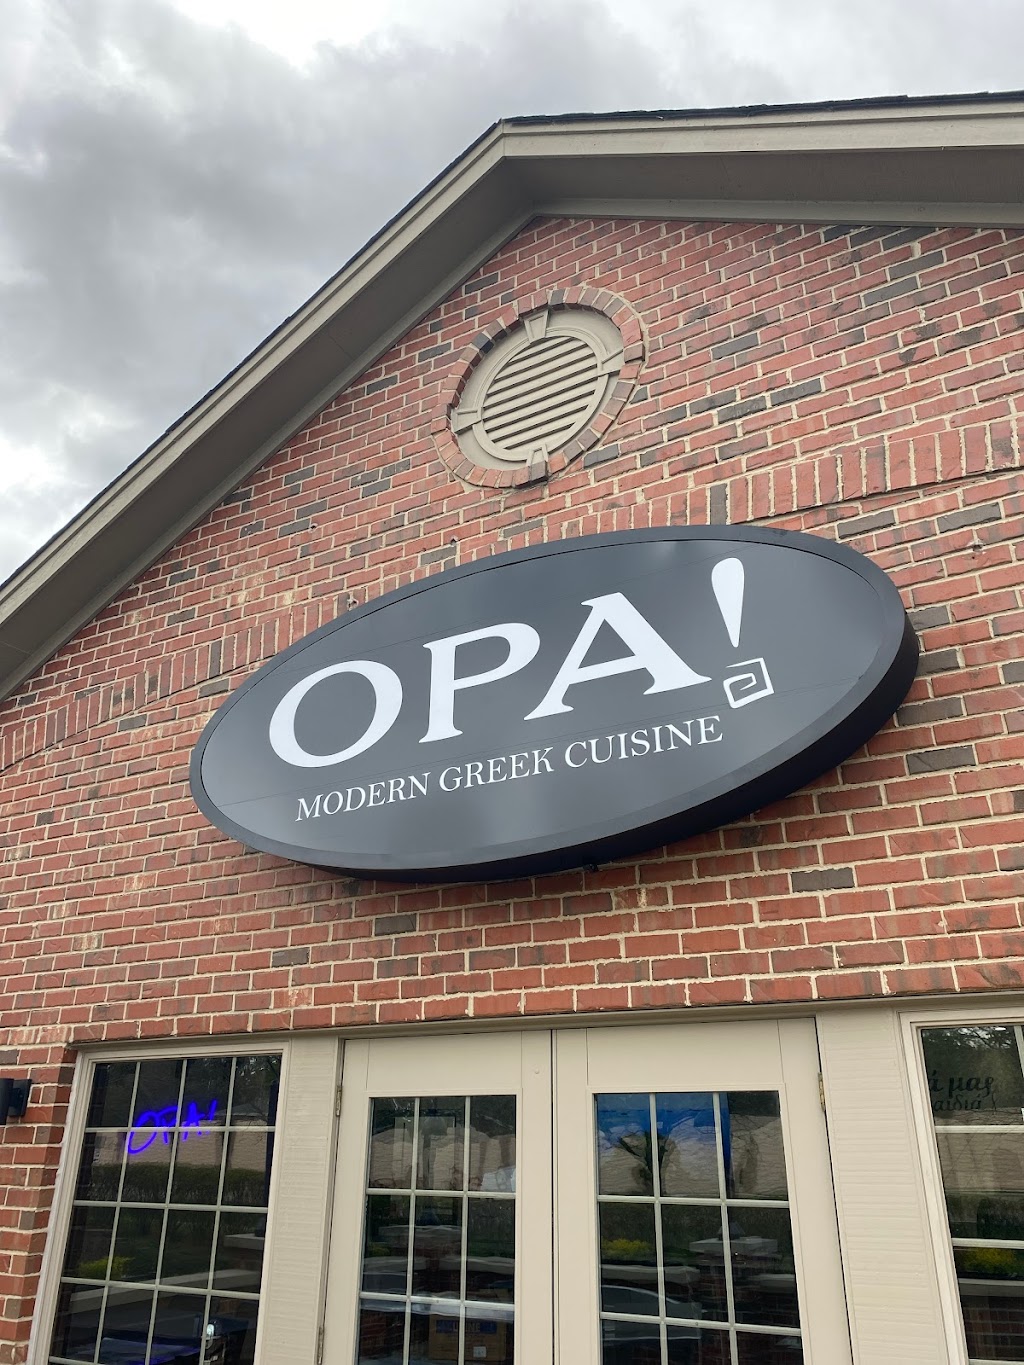 OPA! Modern Greek Cuisine | restaurant | 10235 W Lincoln Hwy, Frankfort, IL 60423, USA | 8158067303 OR +1 815-806-7303